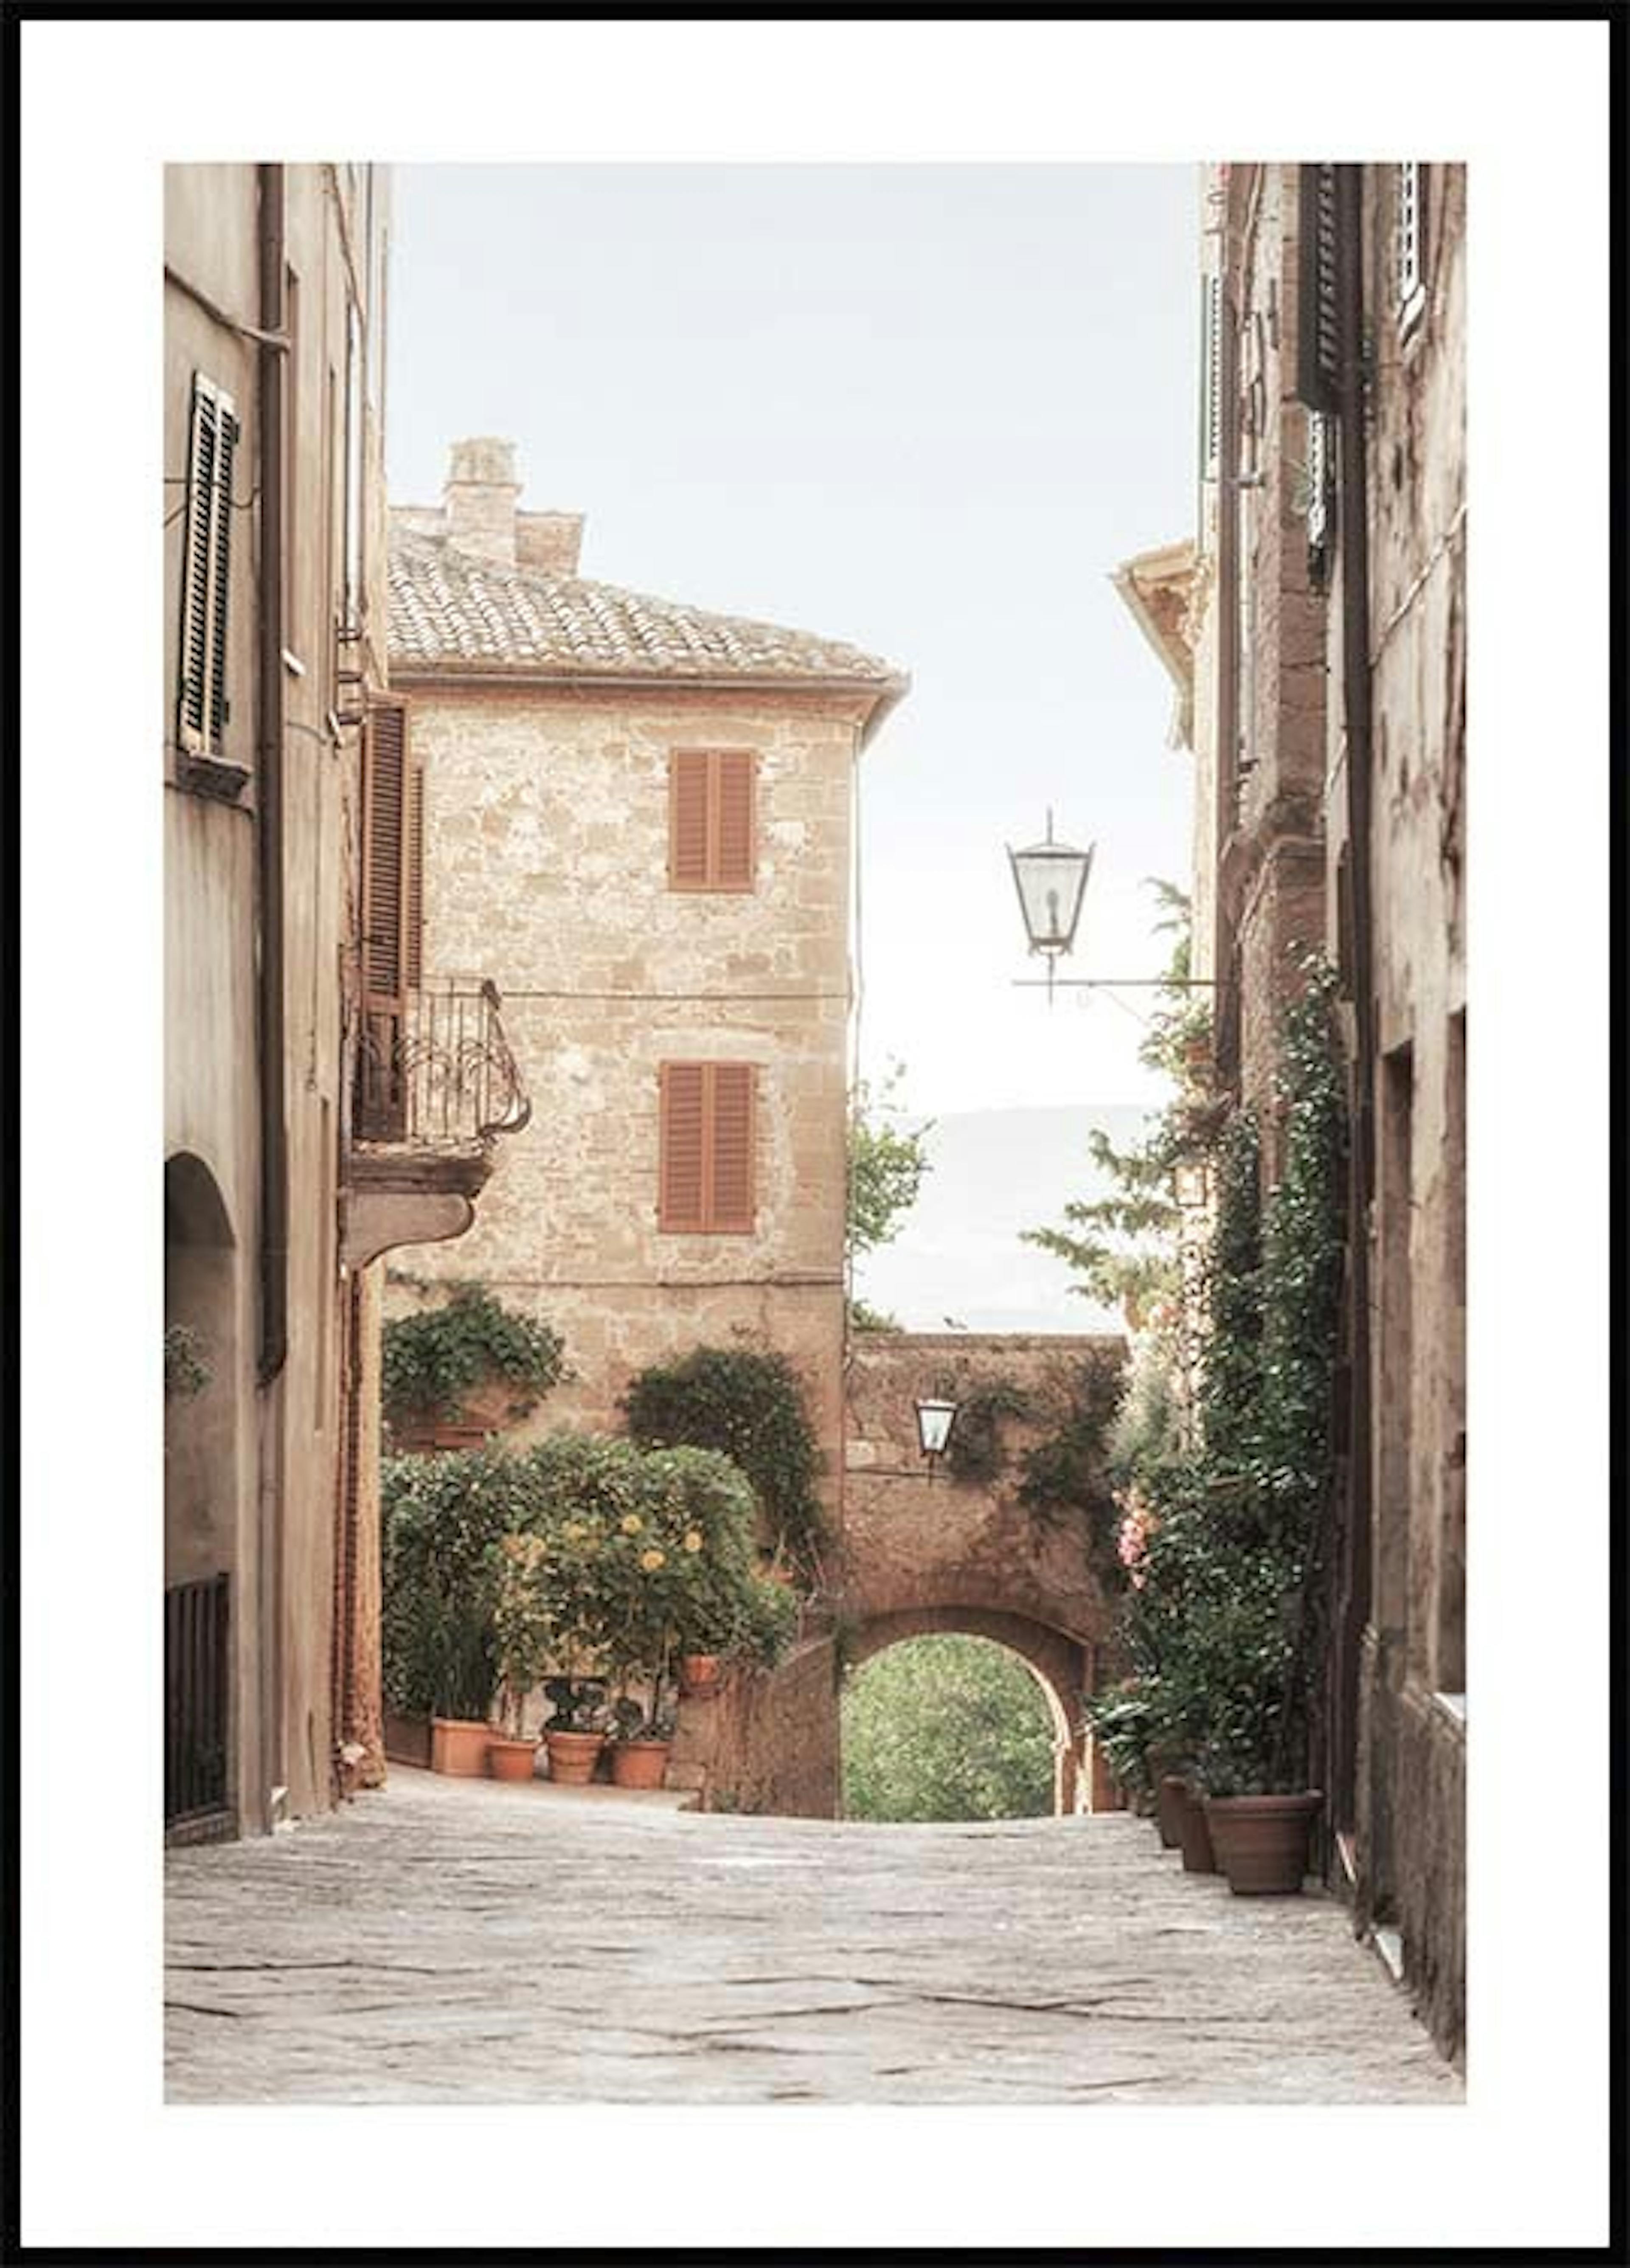 Plakat i den gamle bydel i Italien 0